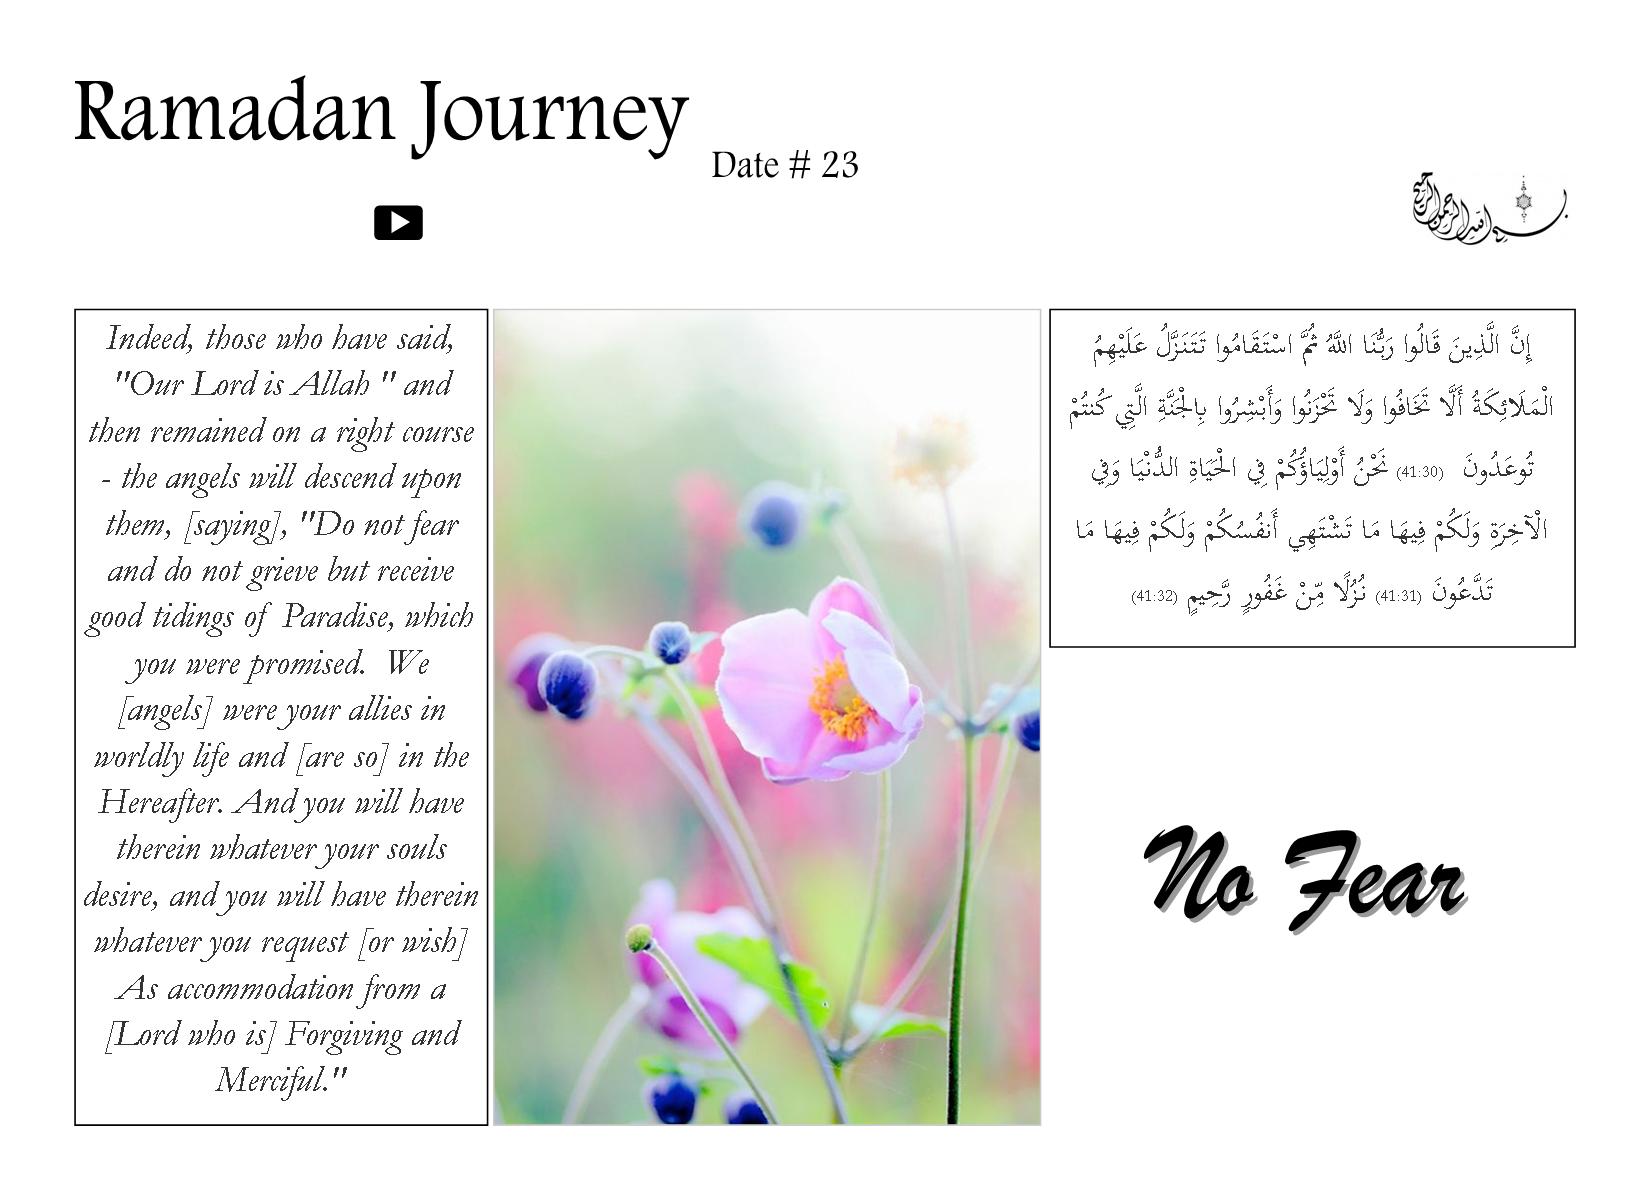 Ramadan Journey - No fear